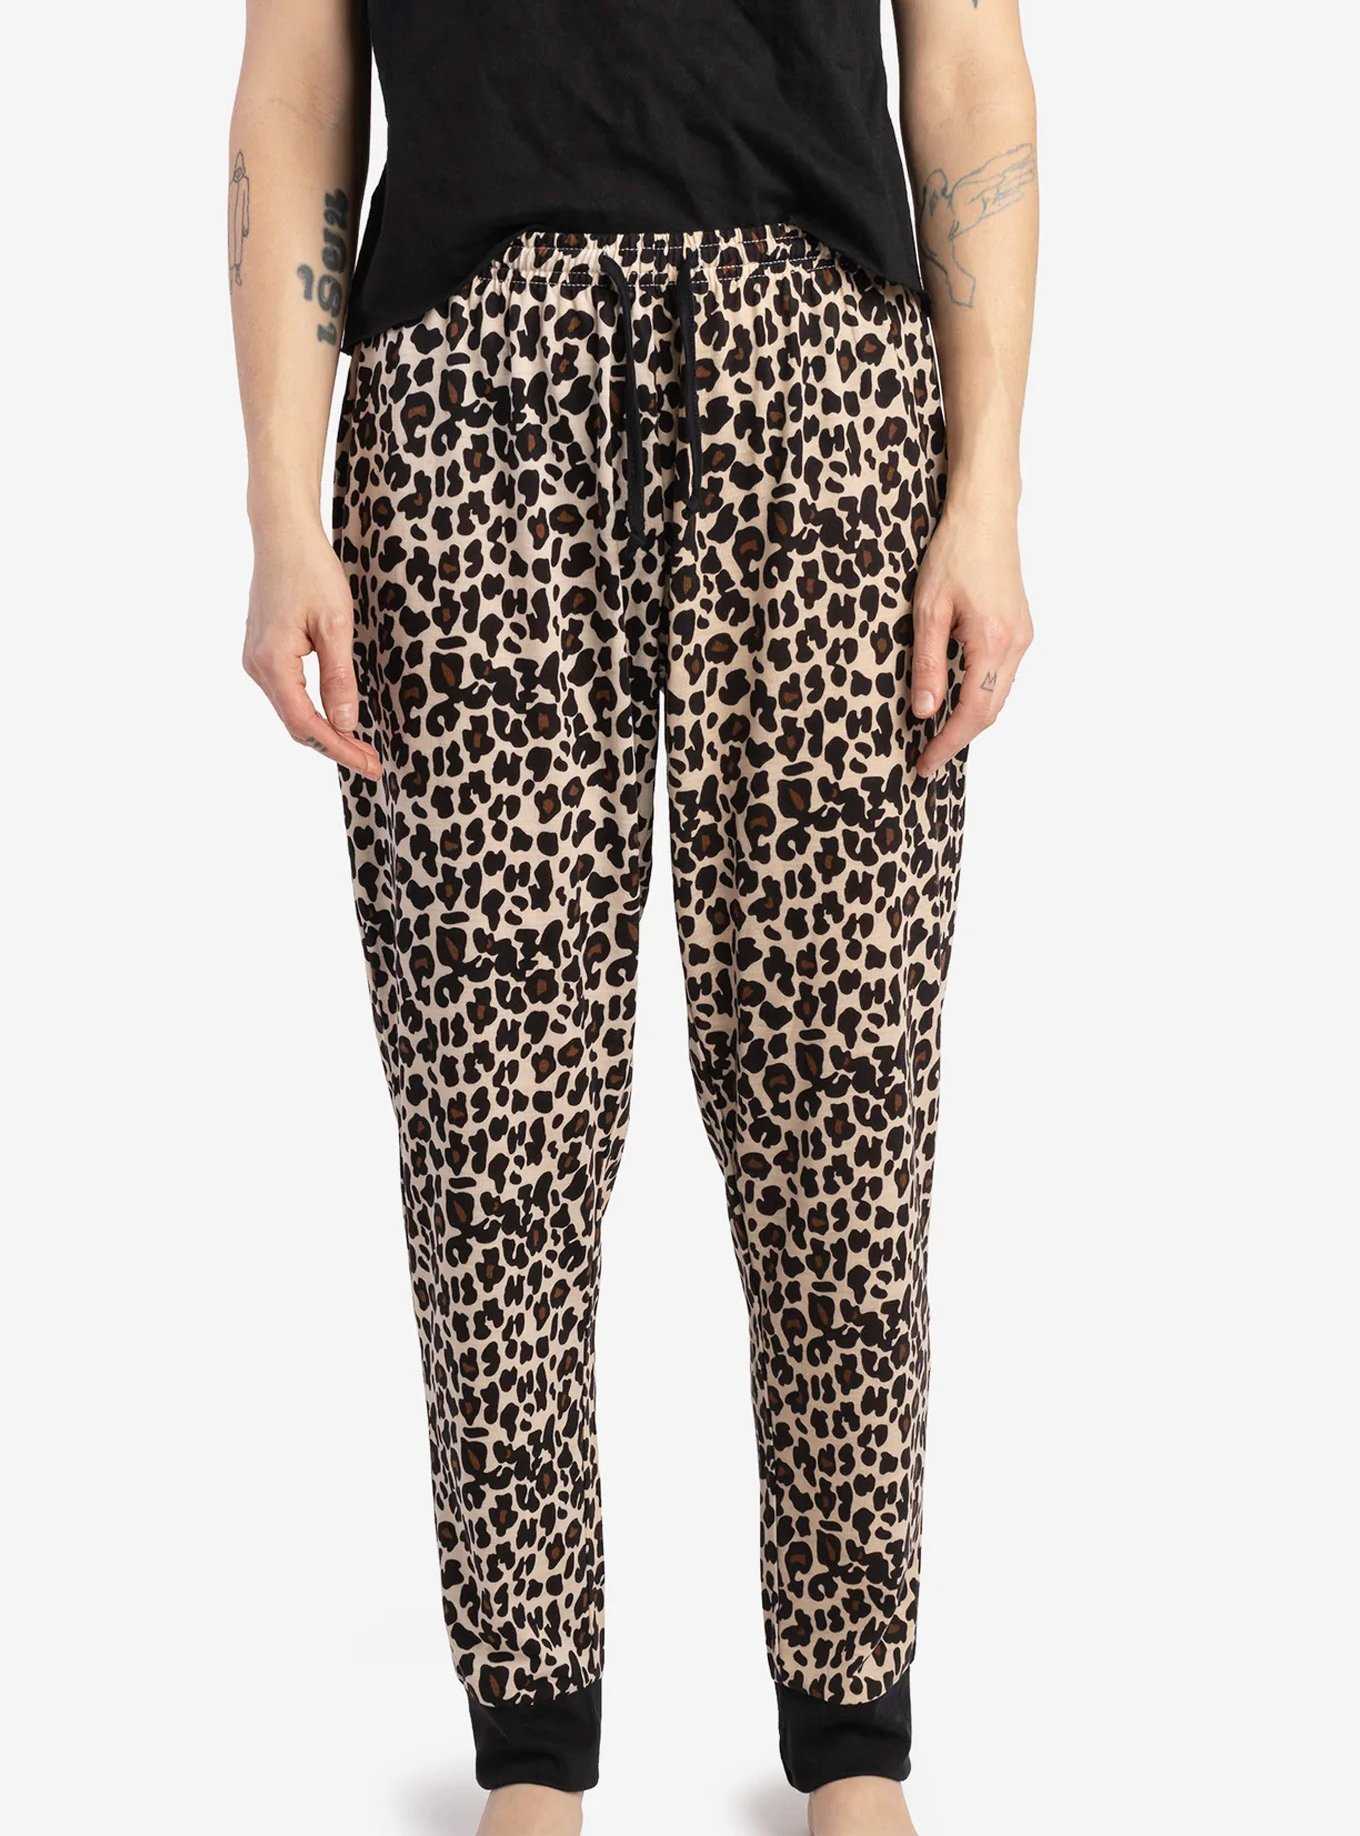 Matching Leopard Human & Dog Pajama, , hi-res